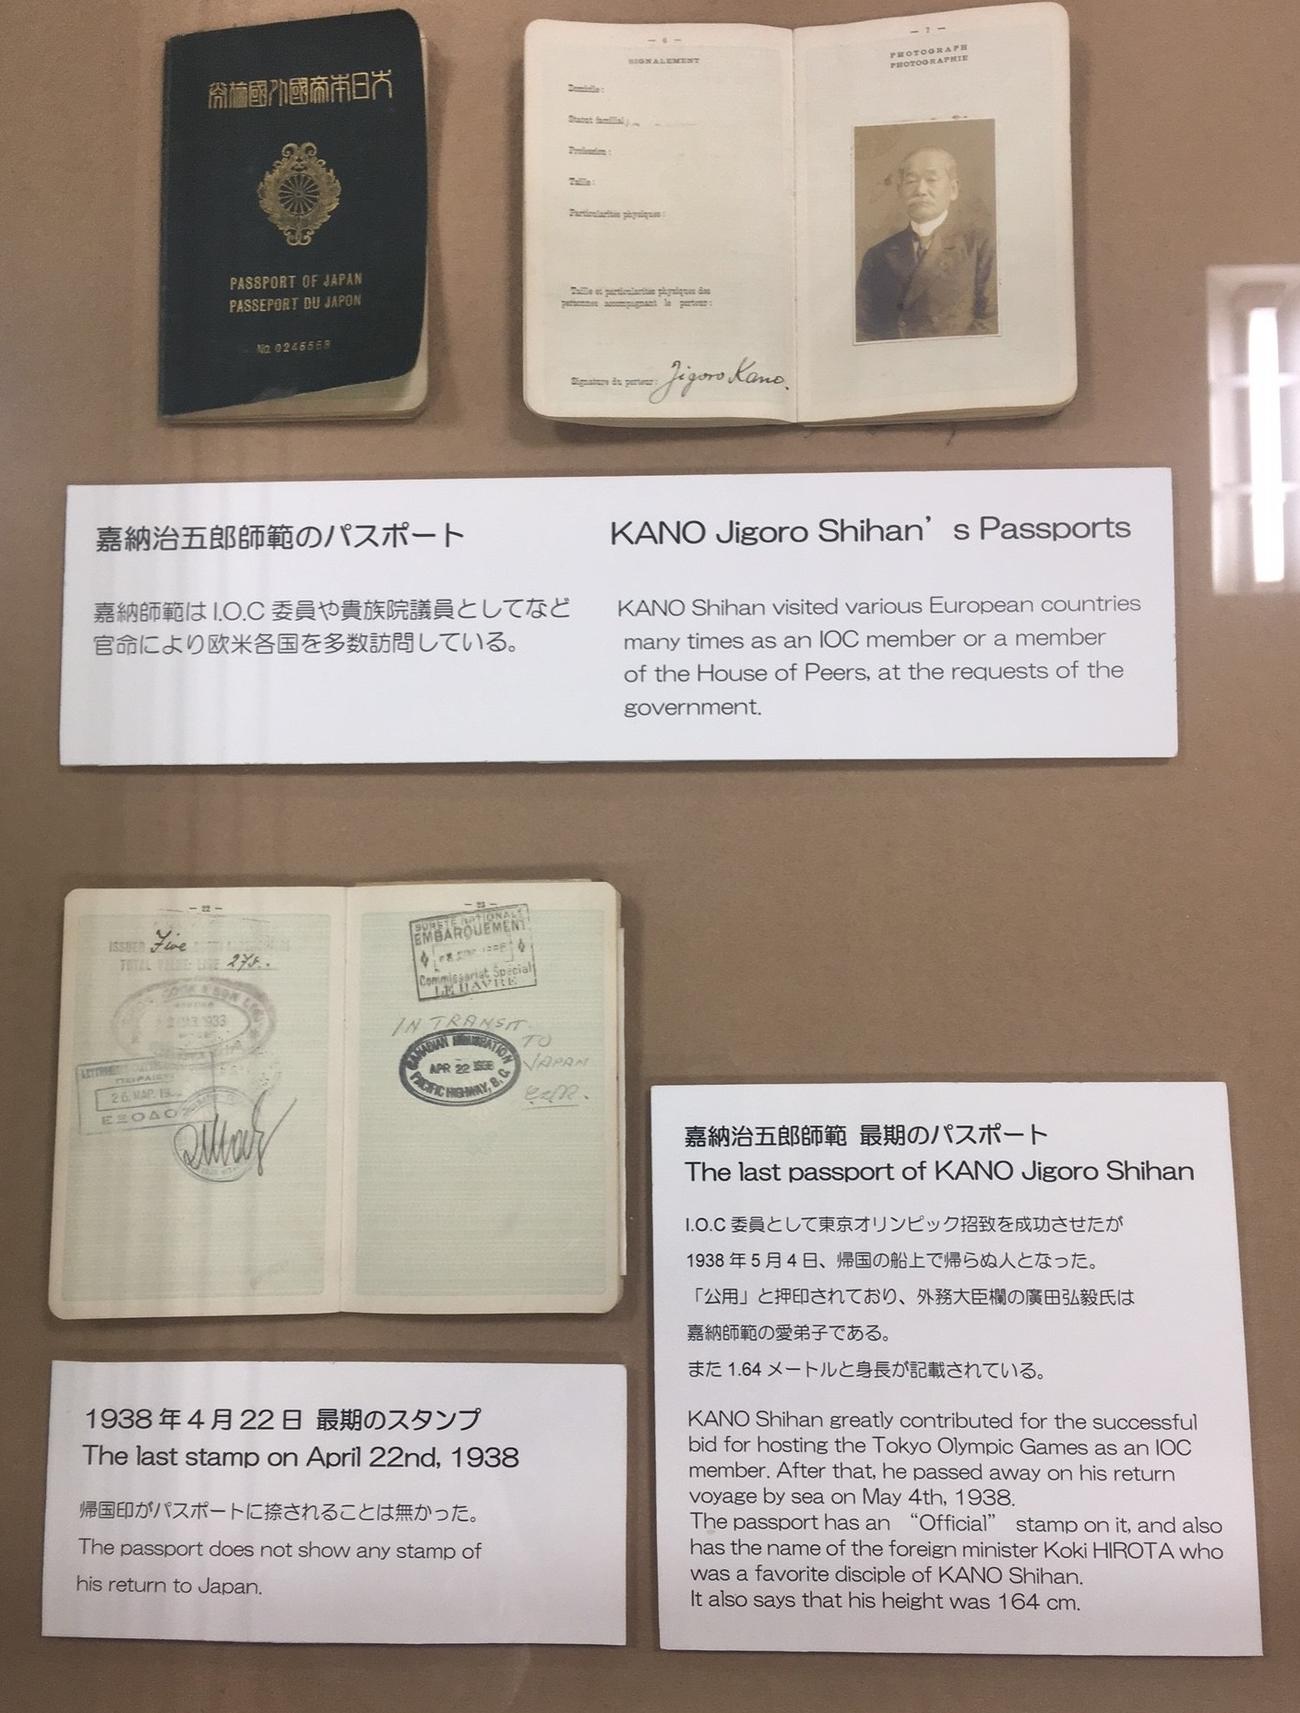 帰国印が押されていない嘉納治五郎のパスポート（撮影・峯岸佑樹）